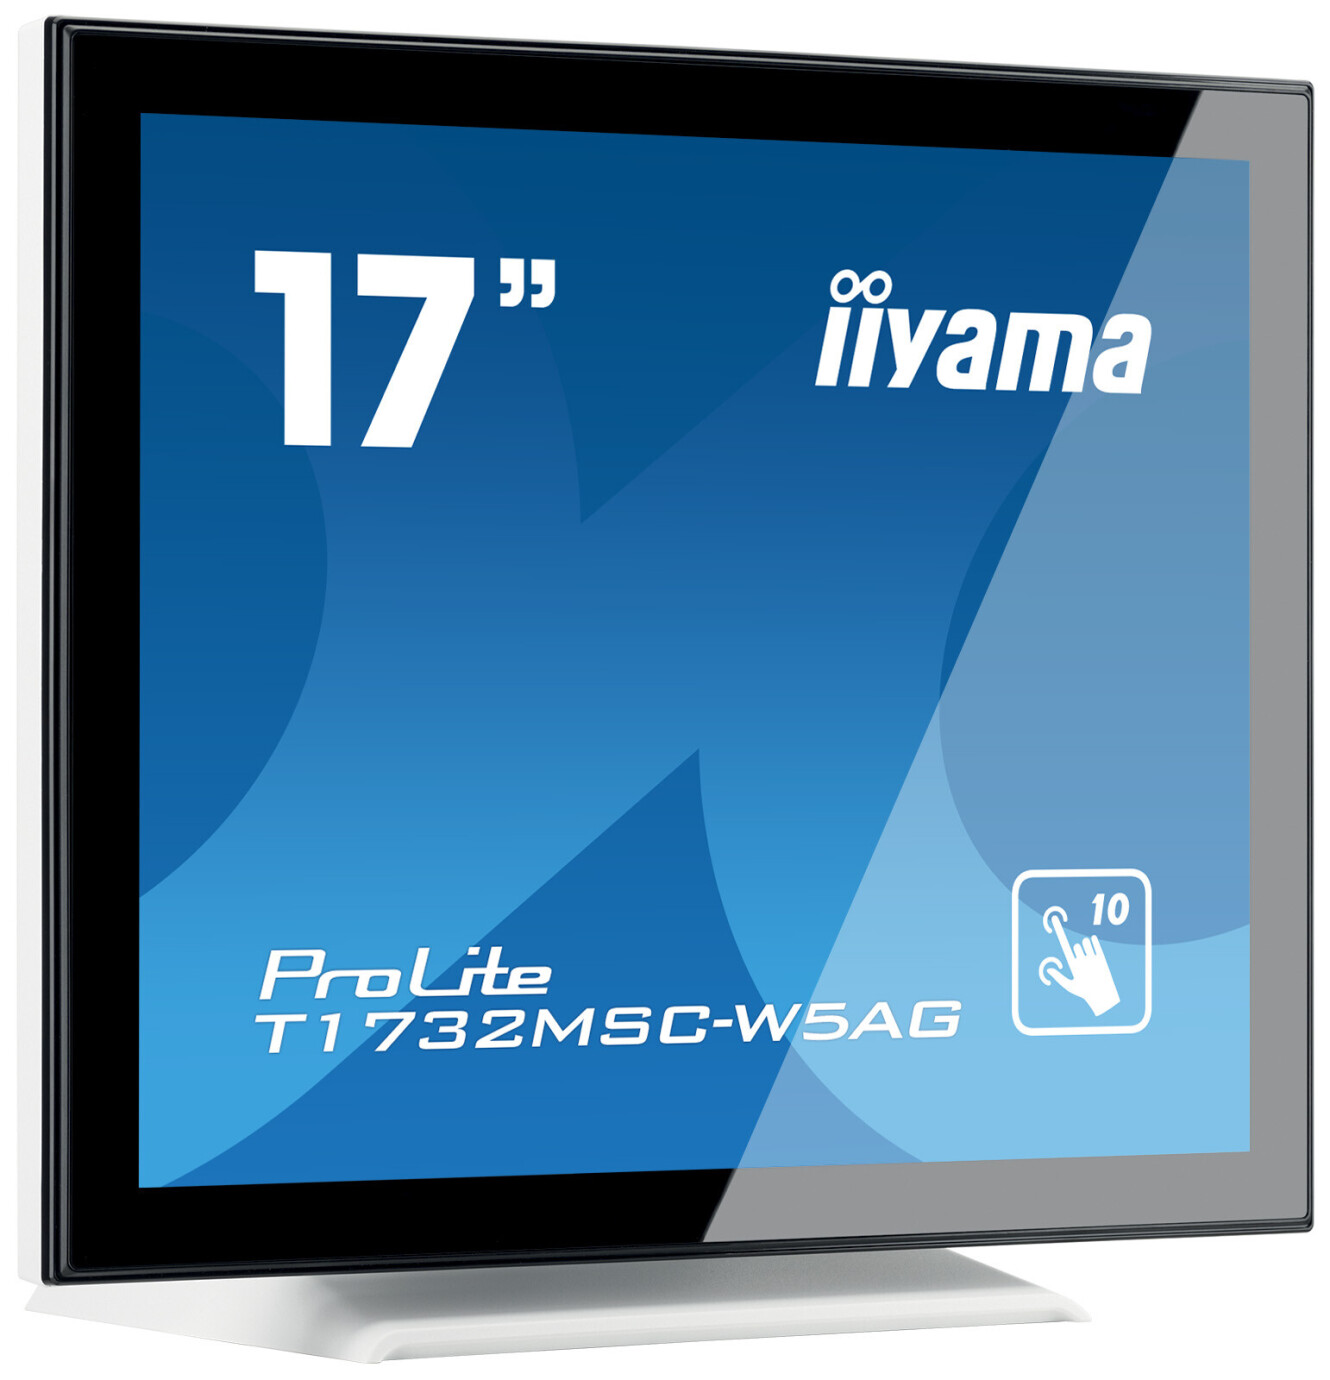 Vorschau: iiyama Prolite T1732MSC-W5AG 17" LCD Monitor mit SXGA und 5ms